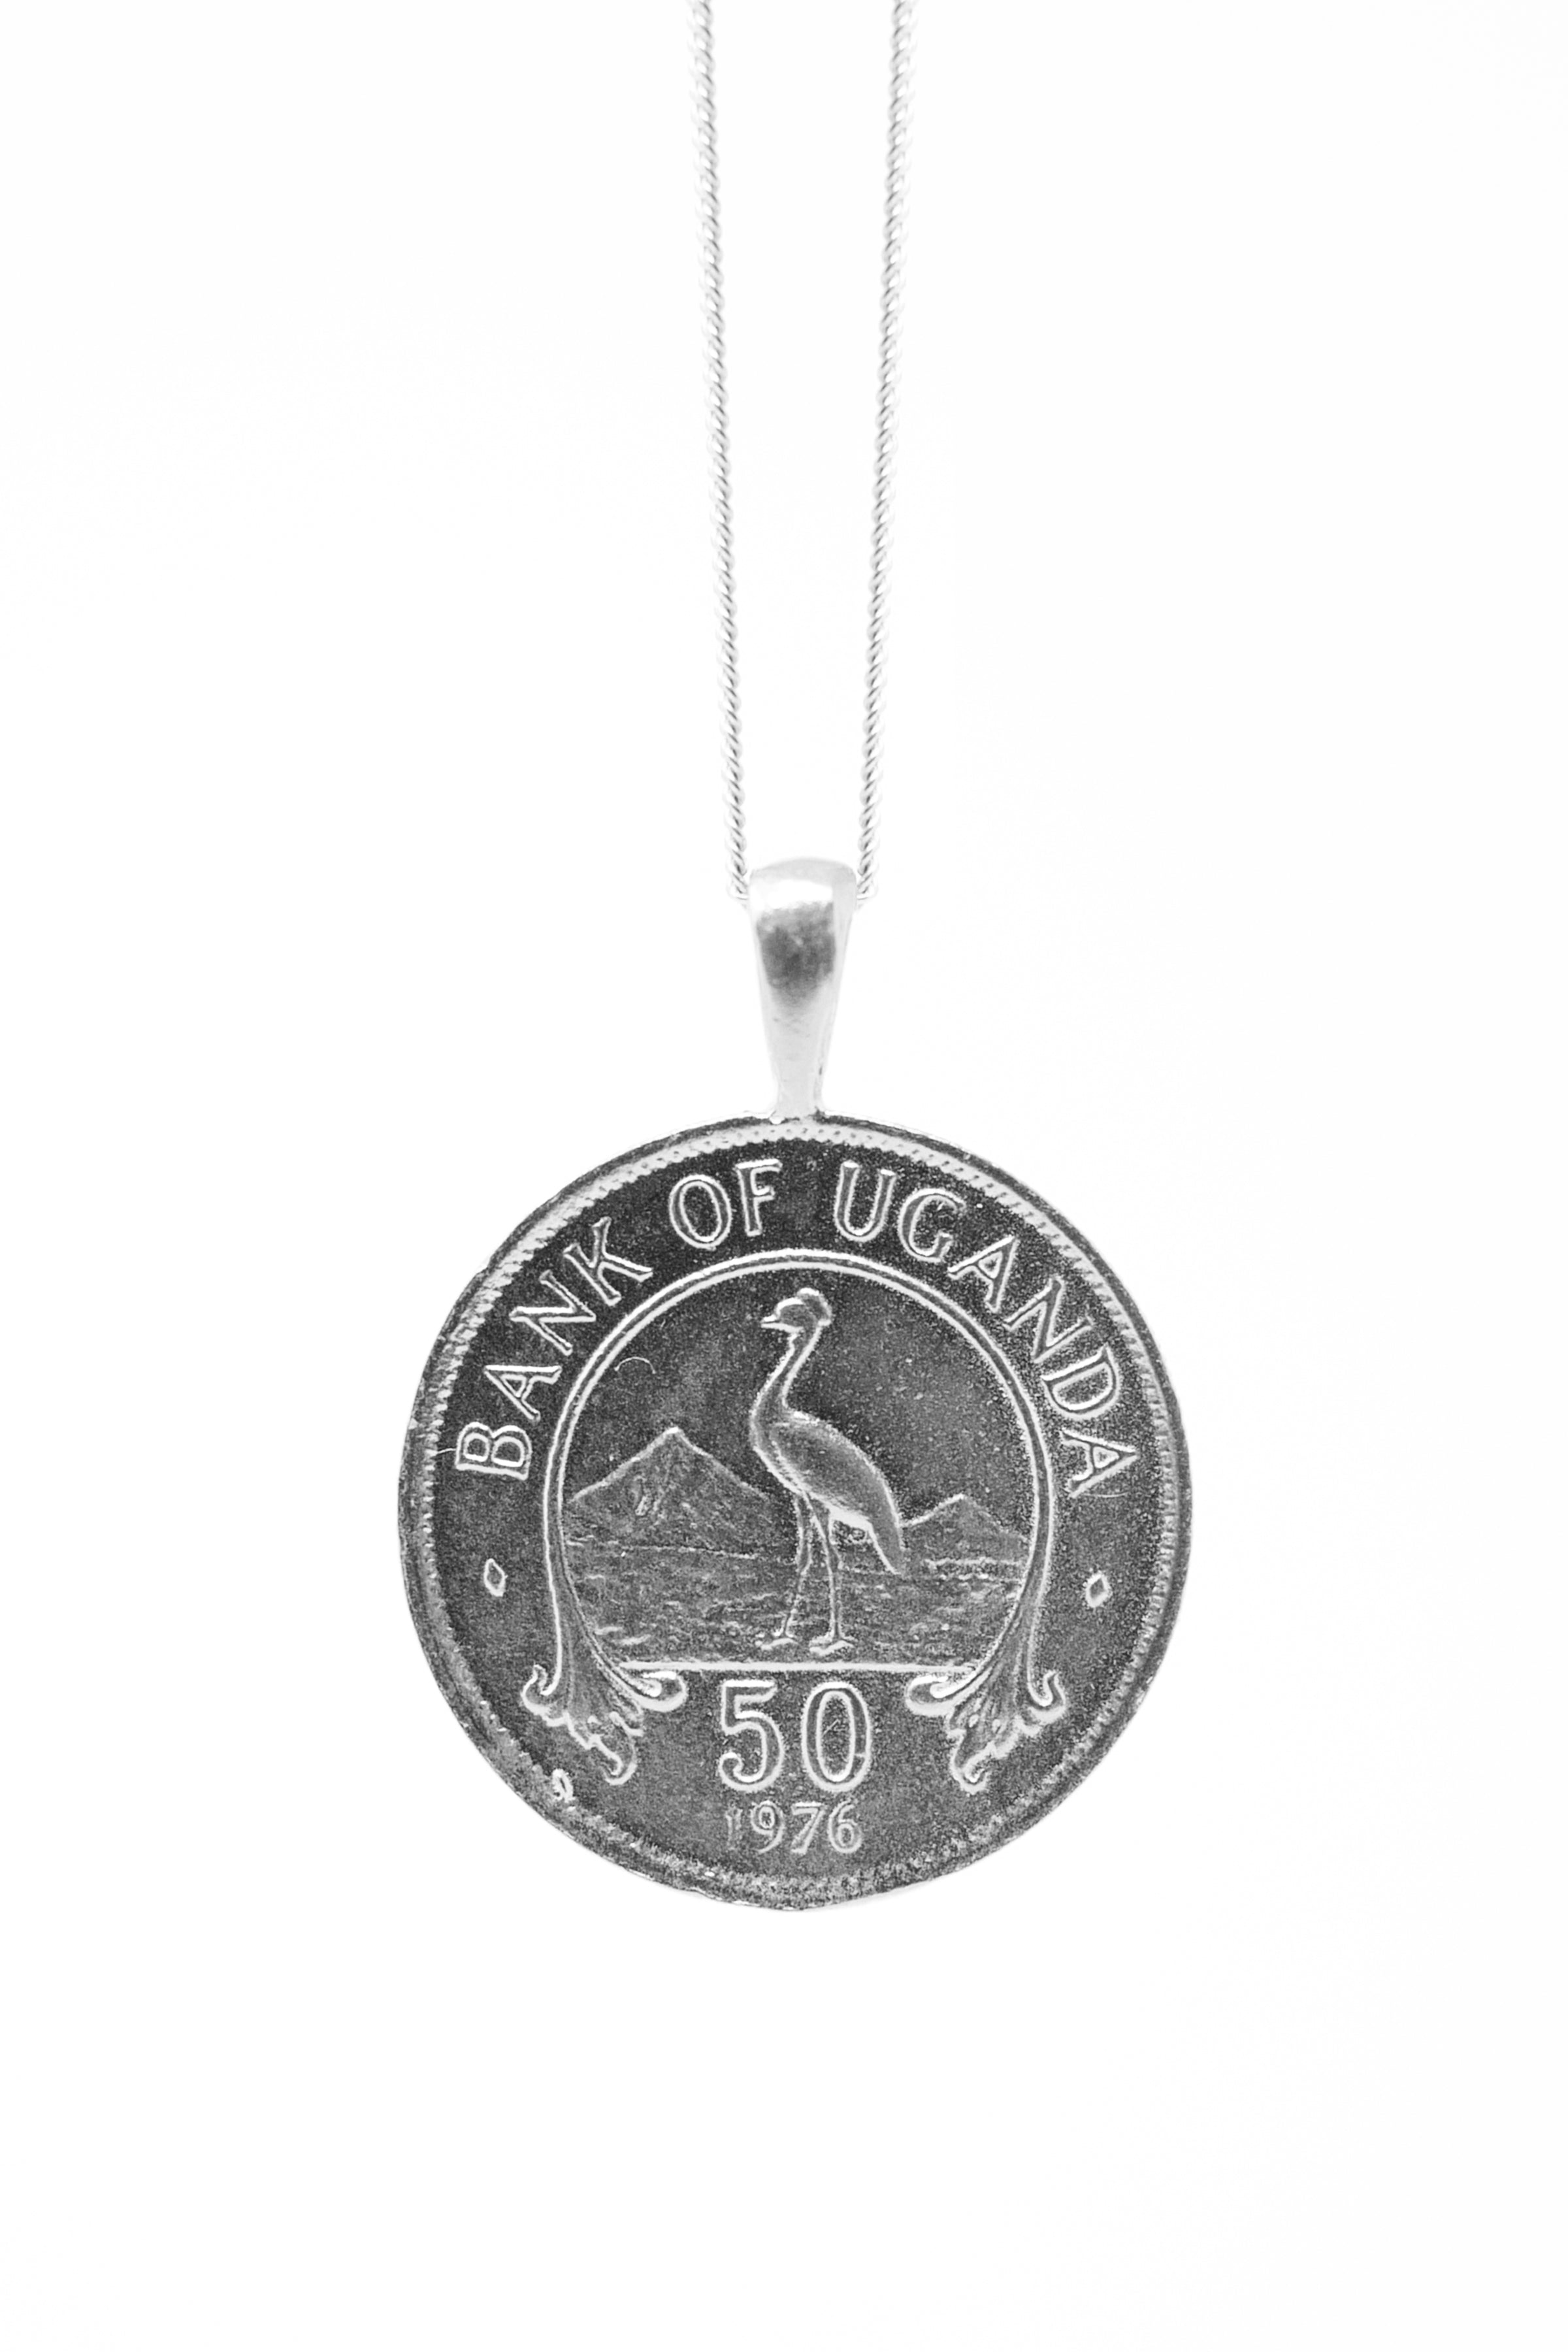 THE UGANDA Coin Necklace